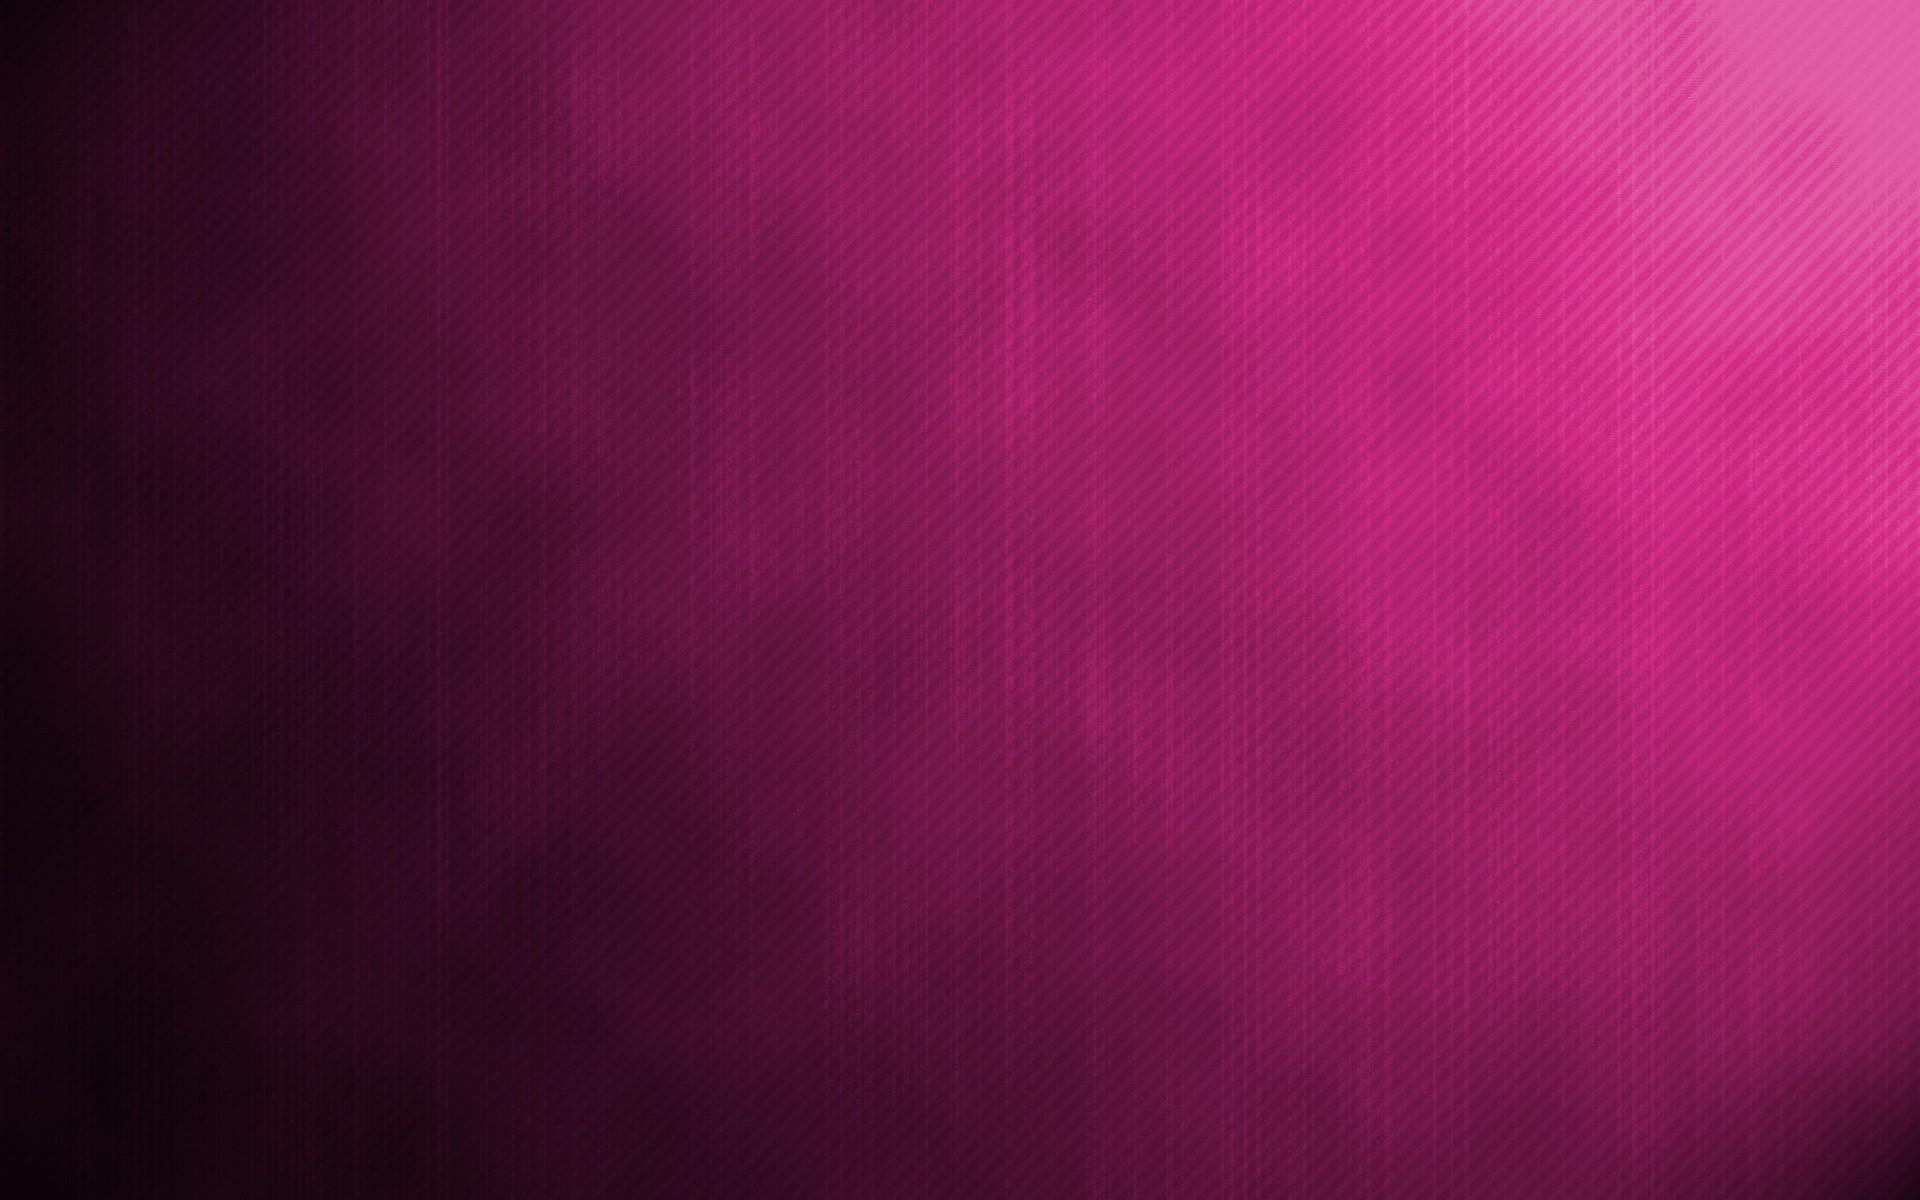 Hot Pink backgroundDownload free HD background for desktop